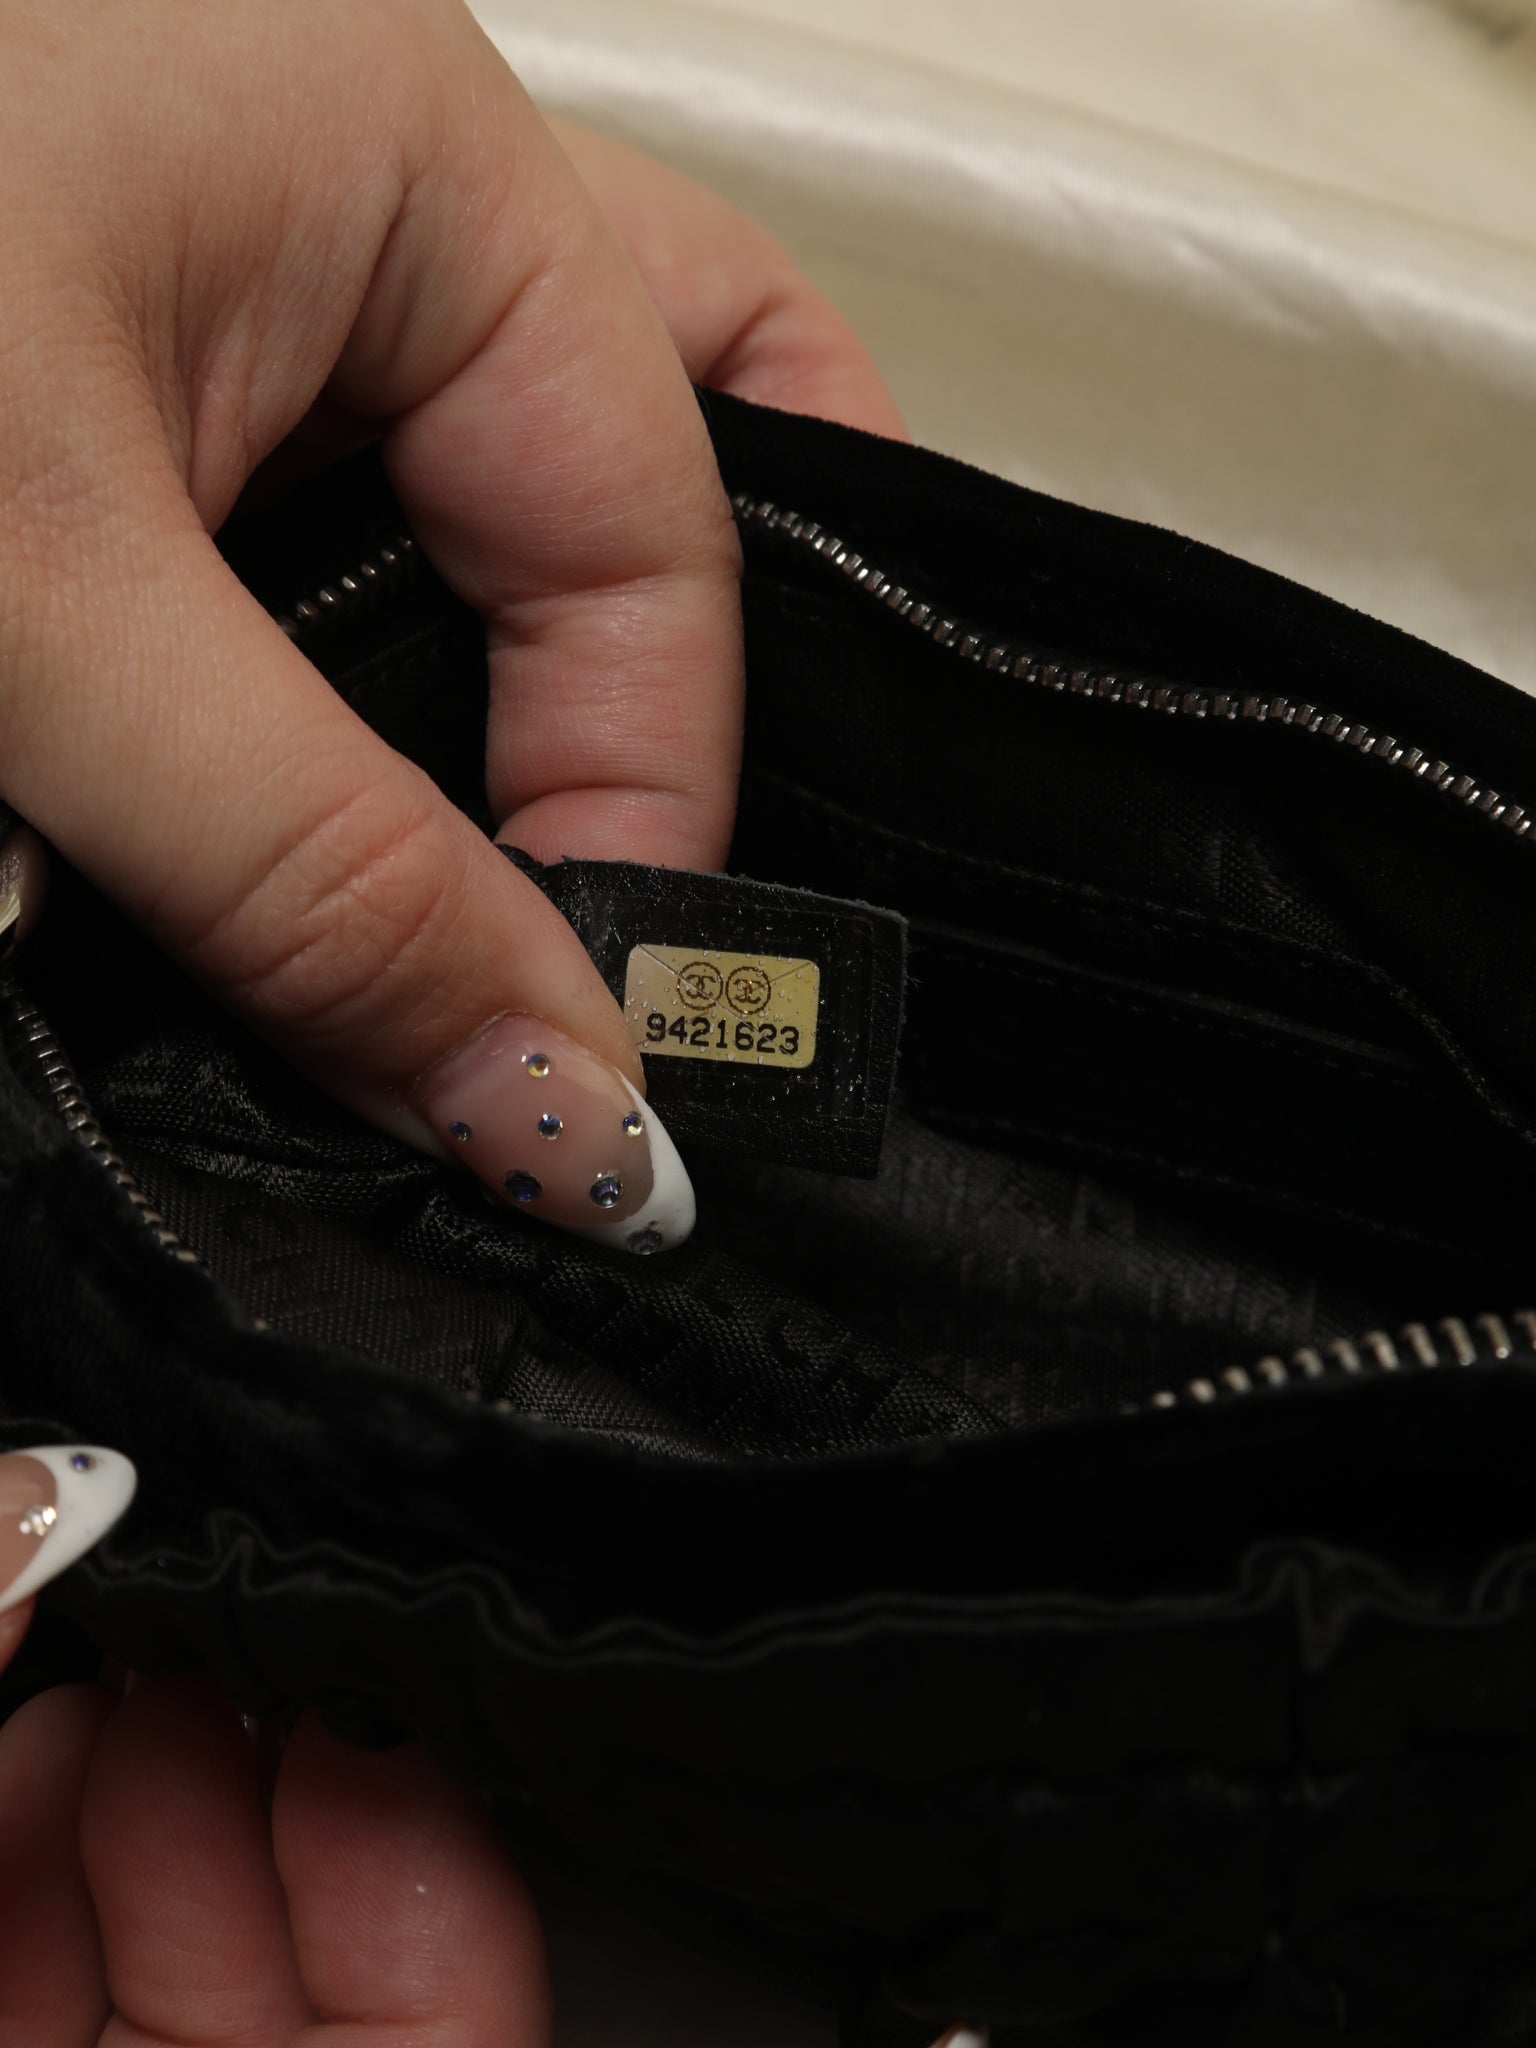 Rare Chanel Nano Velvet Flap Bag – SFN